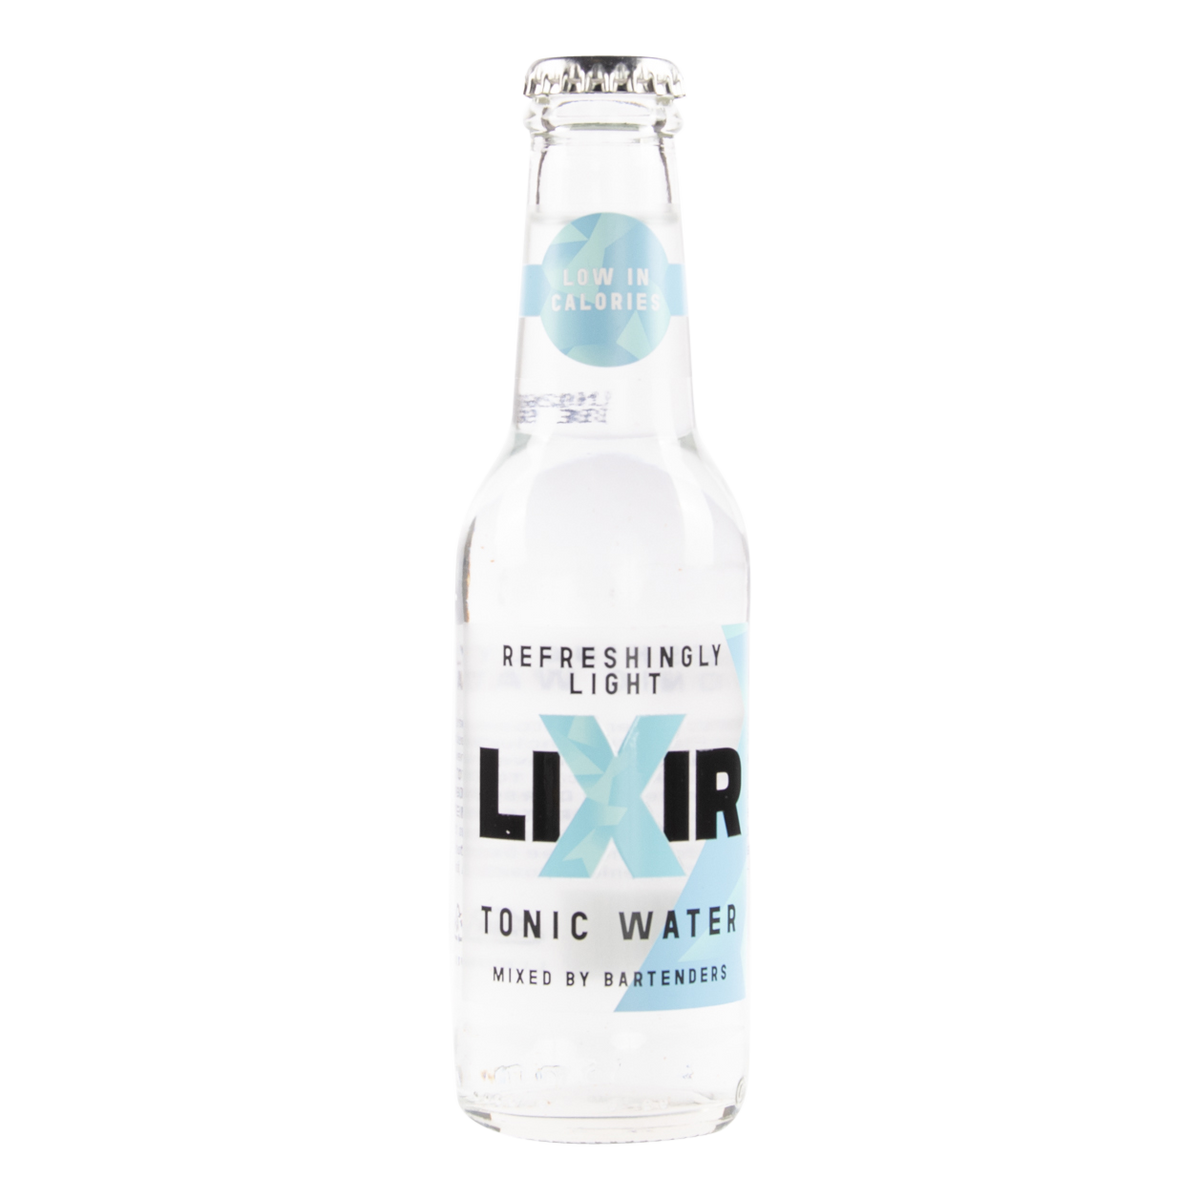 Egmonts garden gin lixir tonic water refreshingly light tonic water verfrissend light